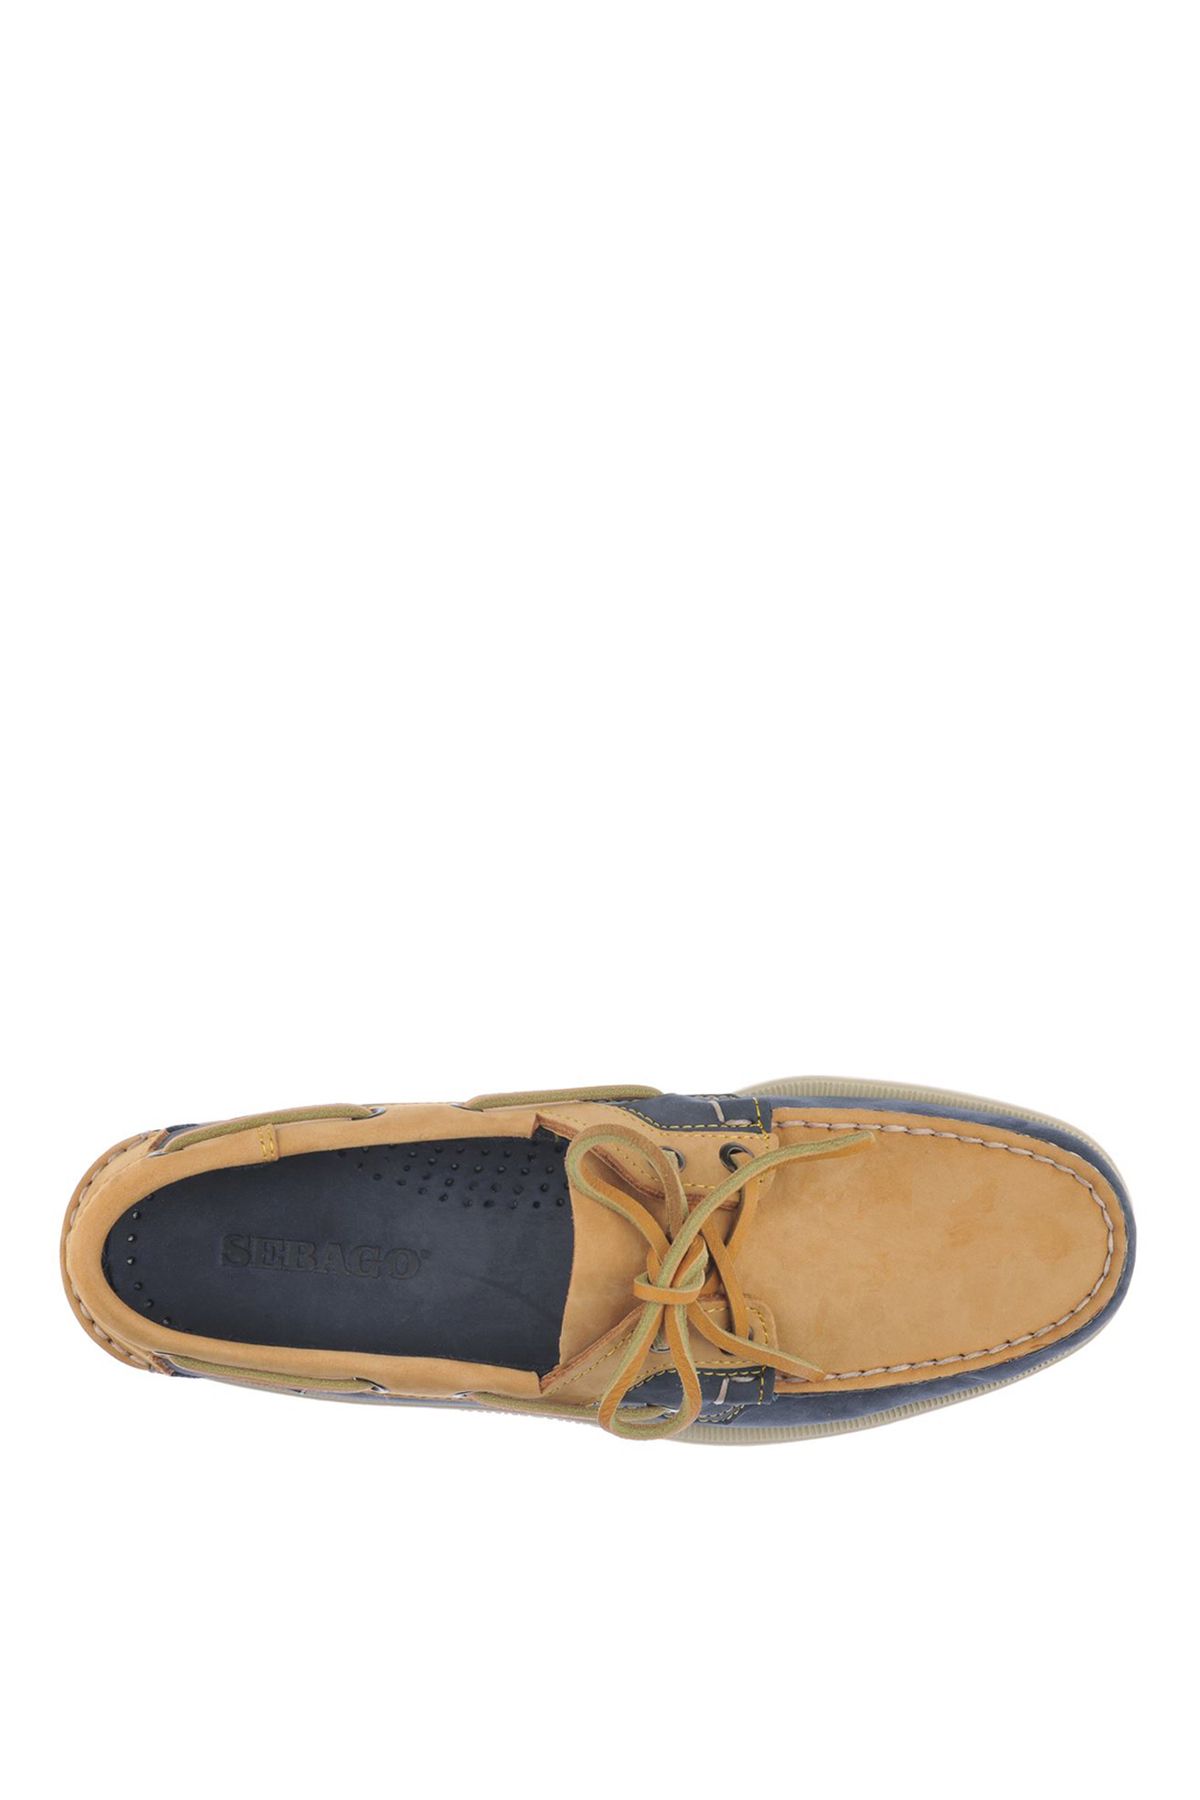 Sebago Lacivert - Sarı Erkek Deri Günlük Ayakkabı SEBAGO ROSSISLAND